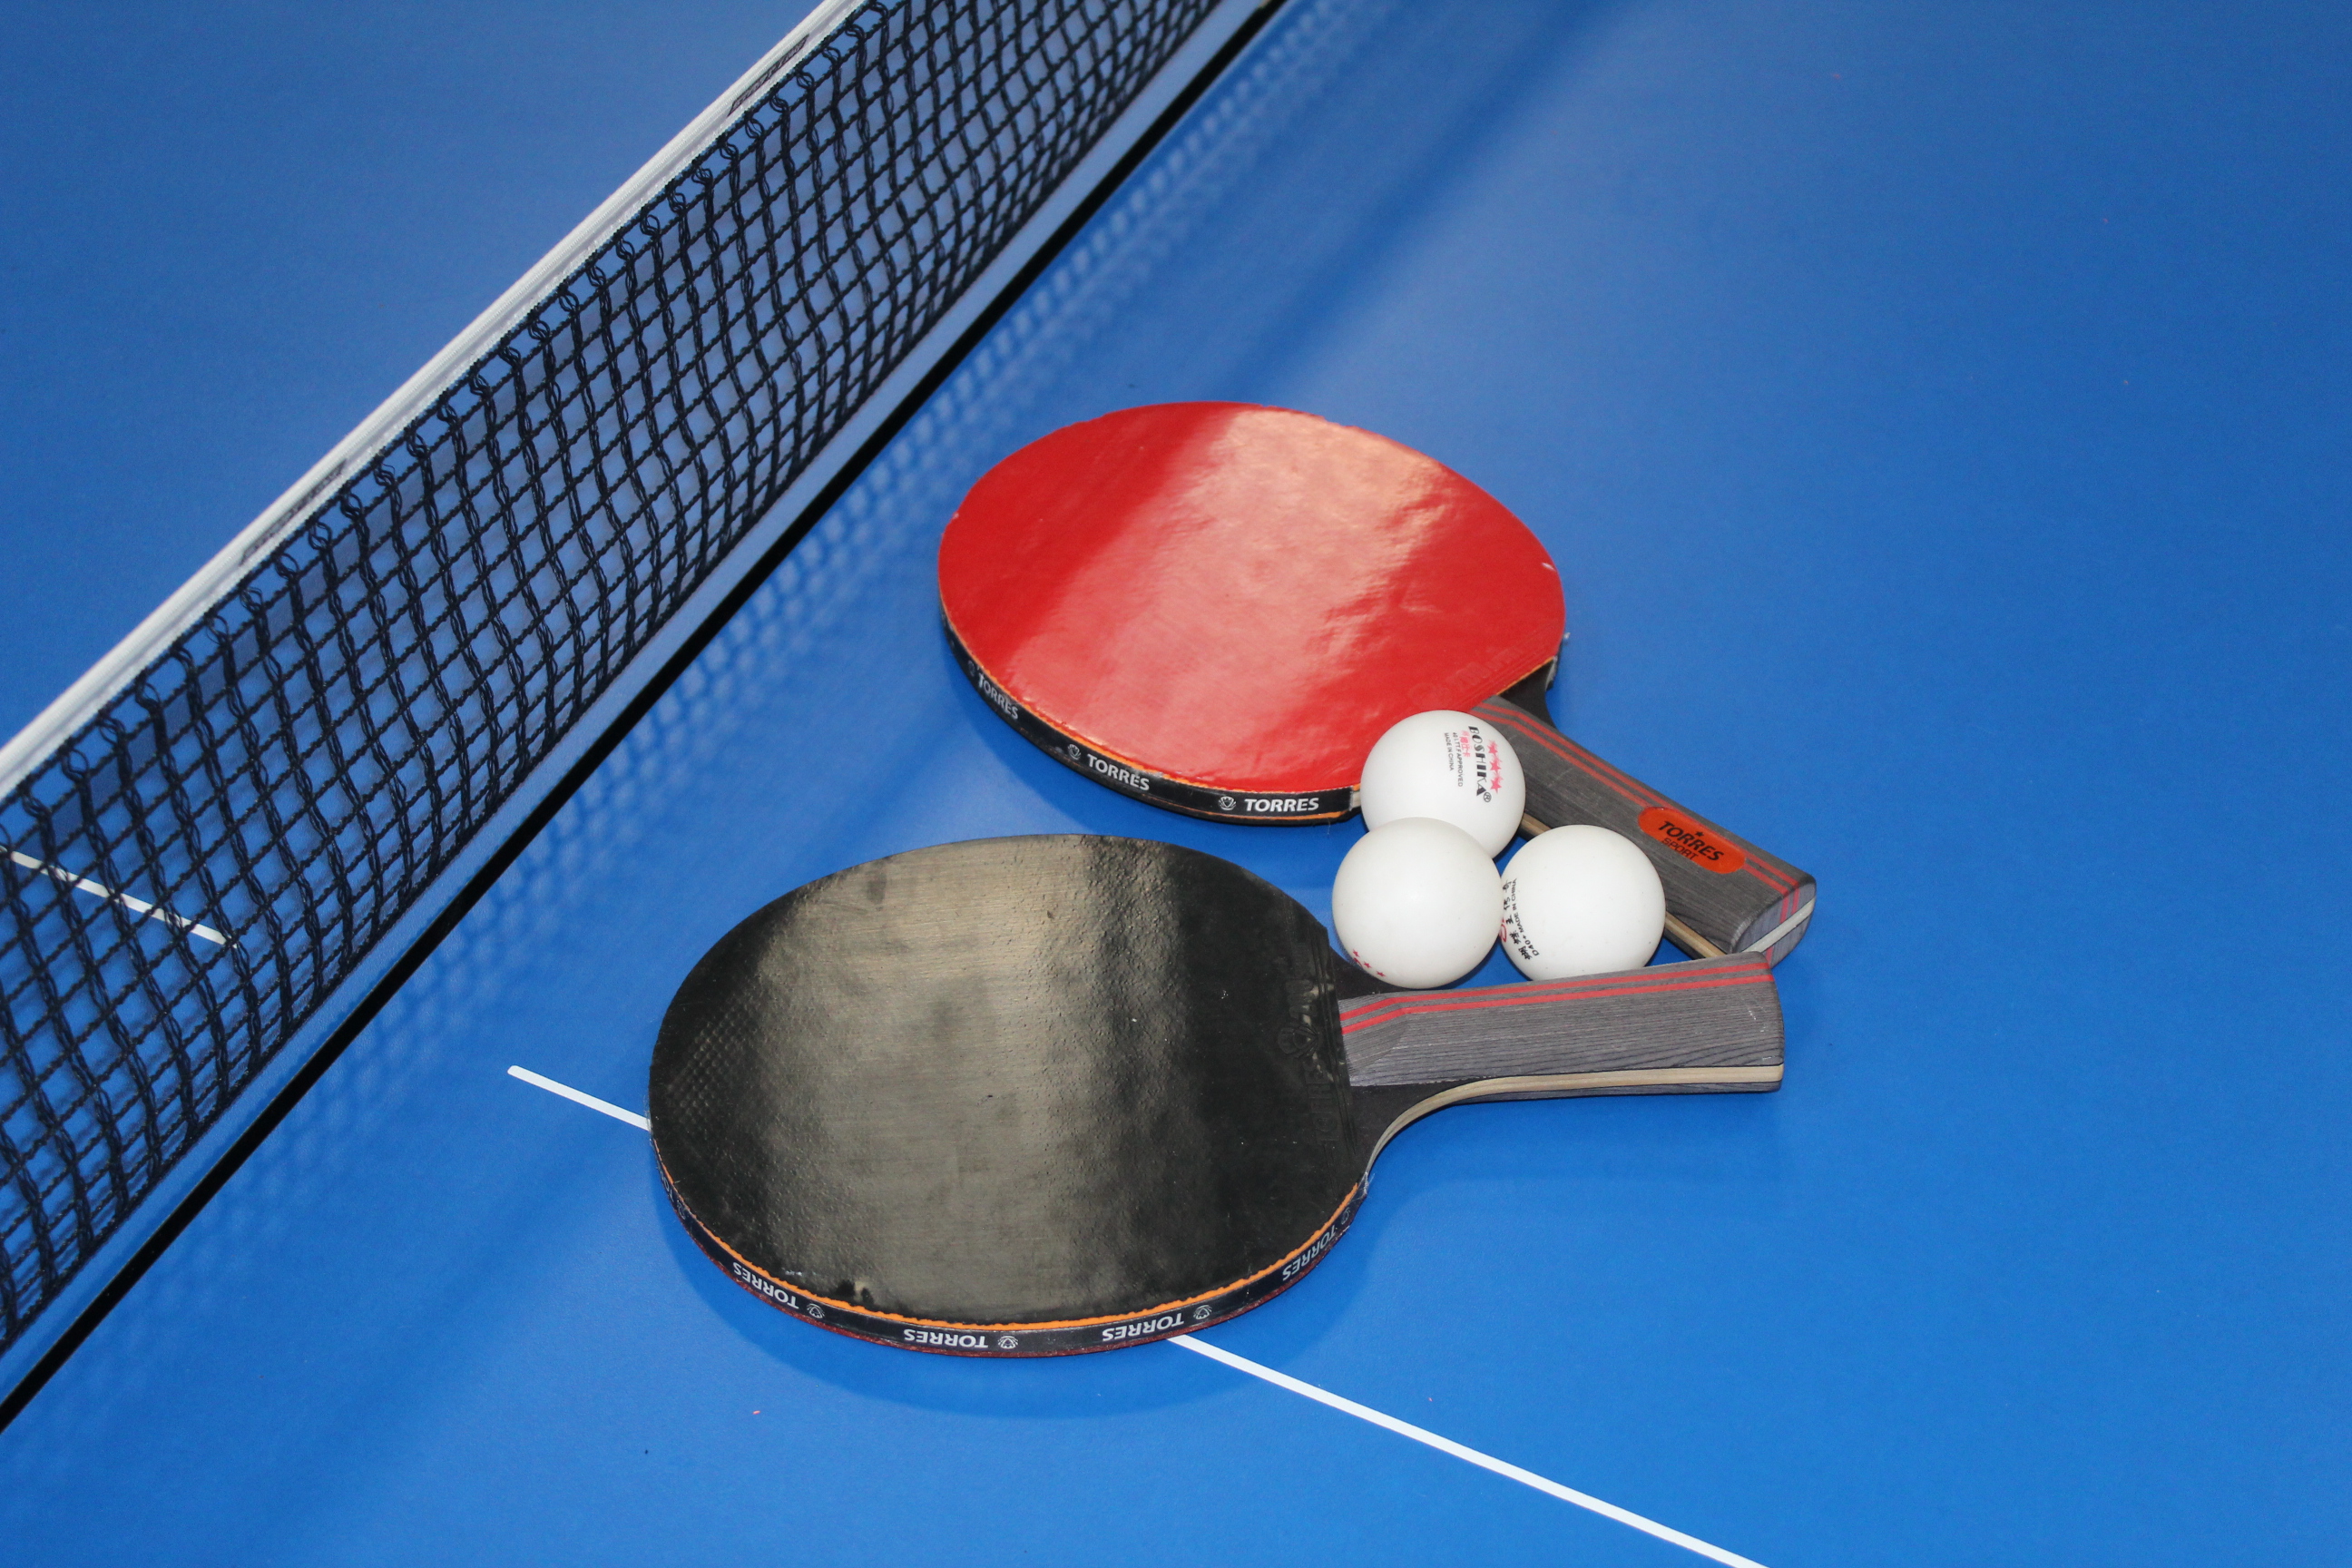 Личный турнир районной спортшколы по настольному теннису провели в Грибановке.